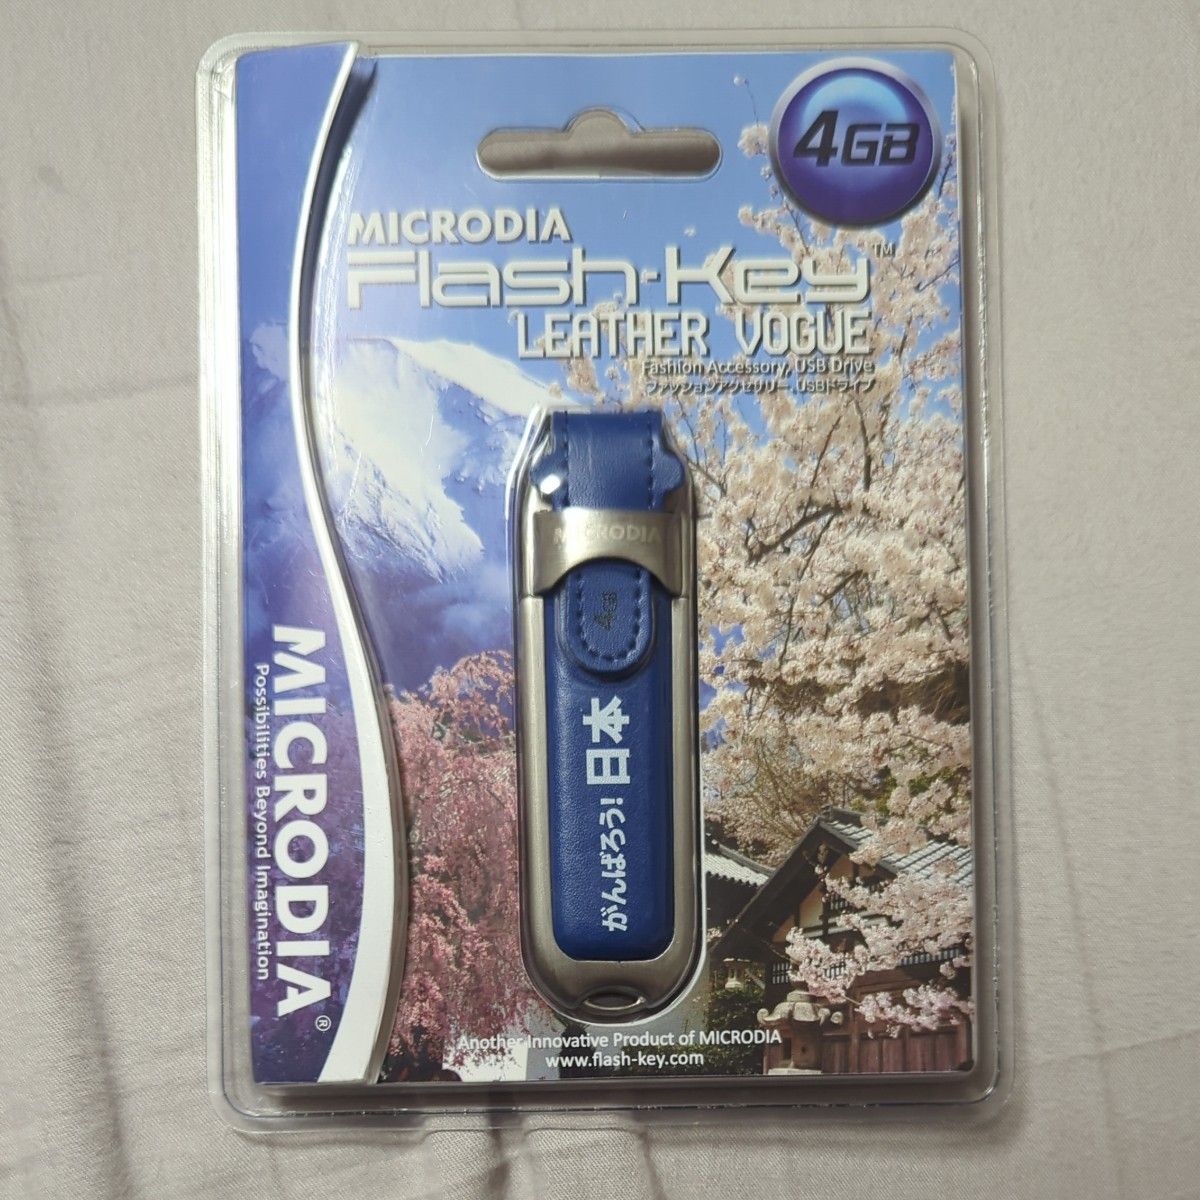 MICRODIA Flash Key LEATHER VOGUE USB2.0 フラッシュメモリ　4GB がんばろう！日本